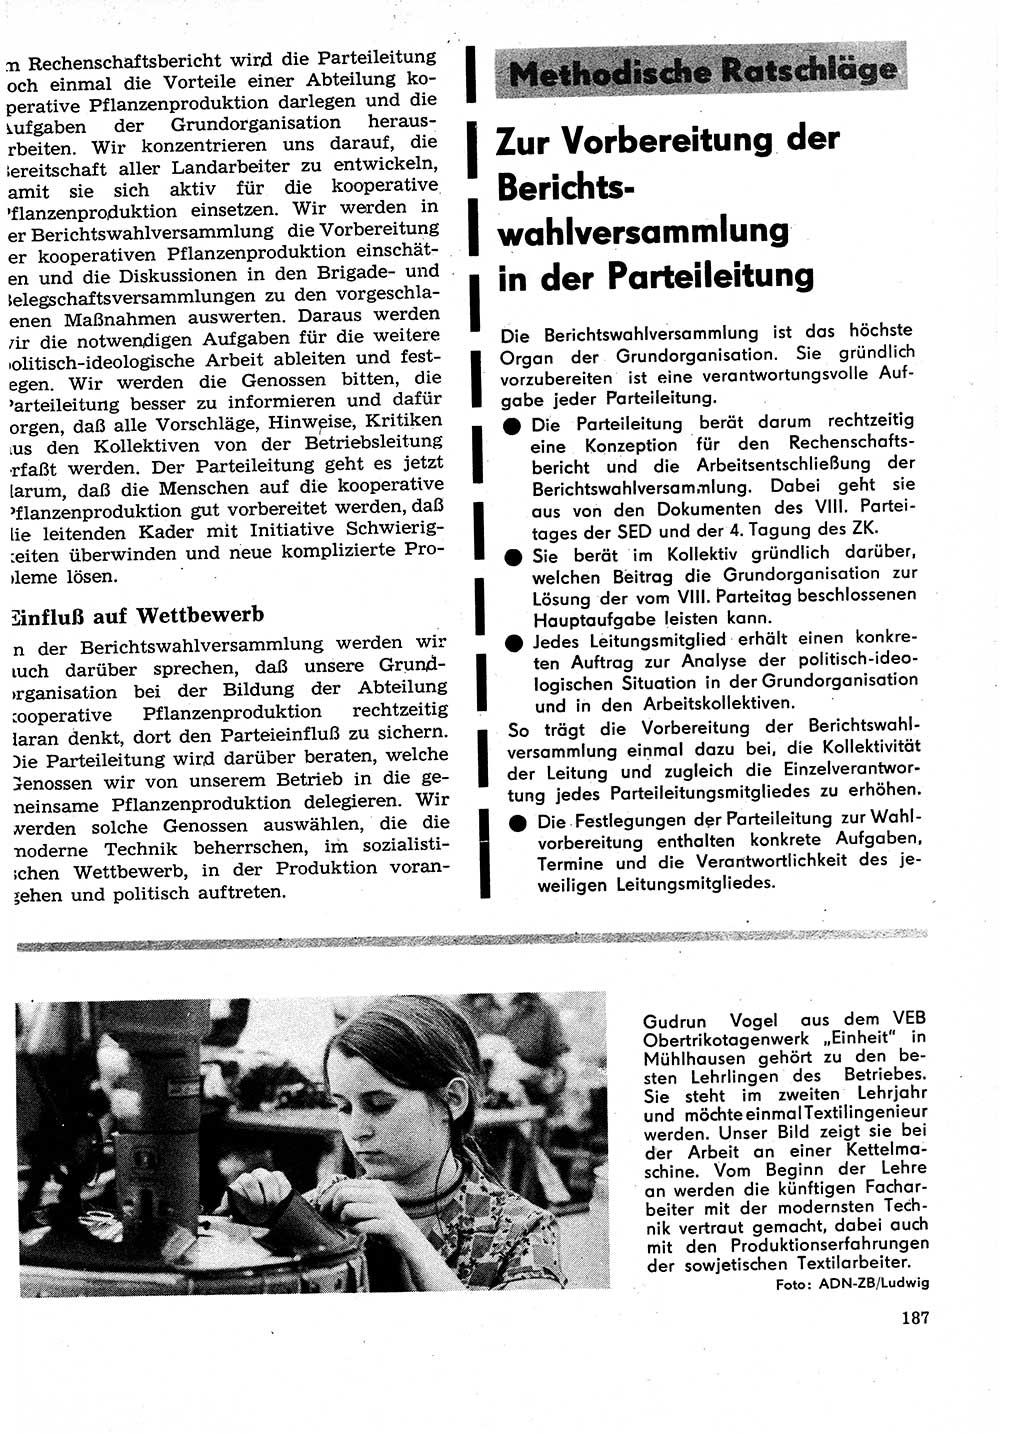 Neuer Weg (NW), Organ des Zentralkomitees (ZK) der SED (Sozialistische Einheitspartei Deutschlands) für Fragen des Parteilebens, 27. Jahrgang [Deutsche Demokratische Republik (DDR)] 1972, Seite 187 (NW ZK SED DDR 1972, S. 187)